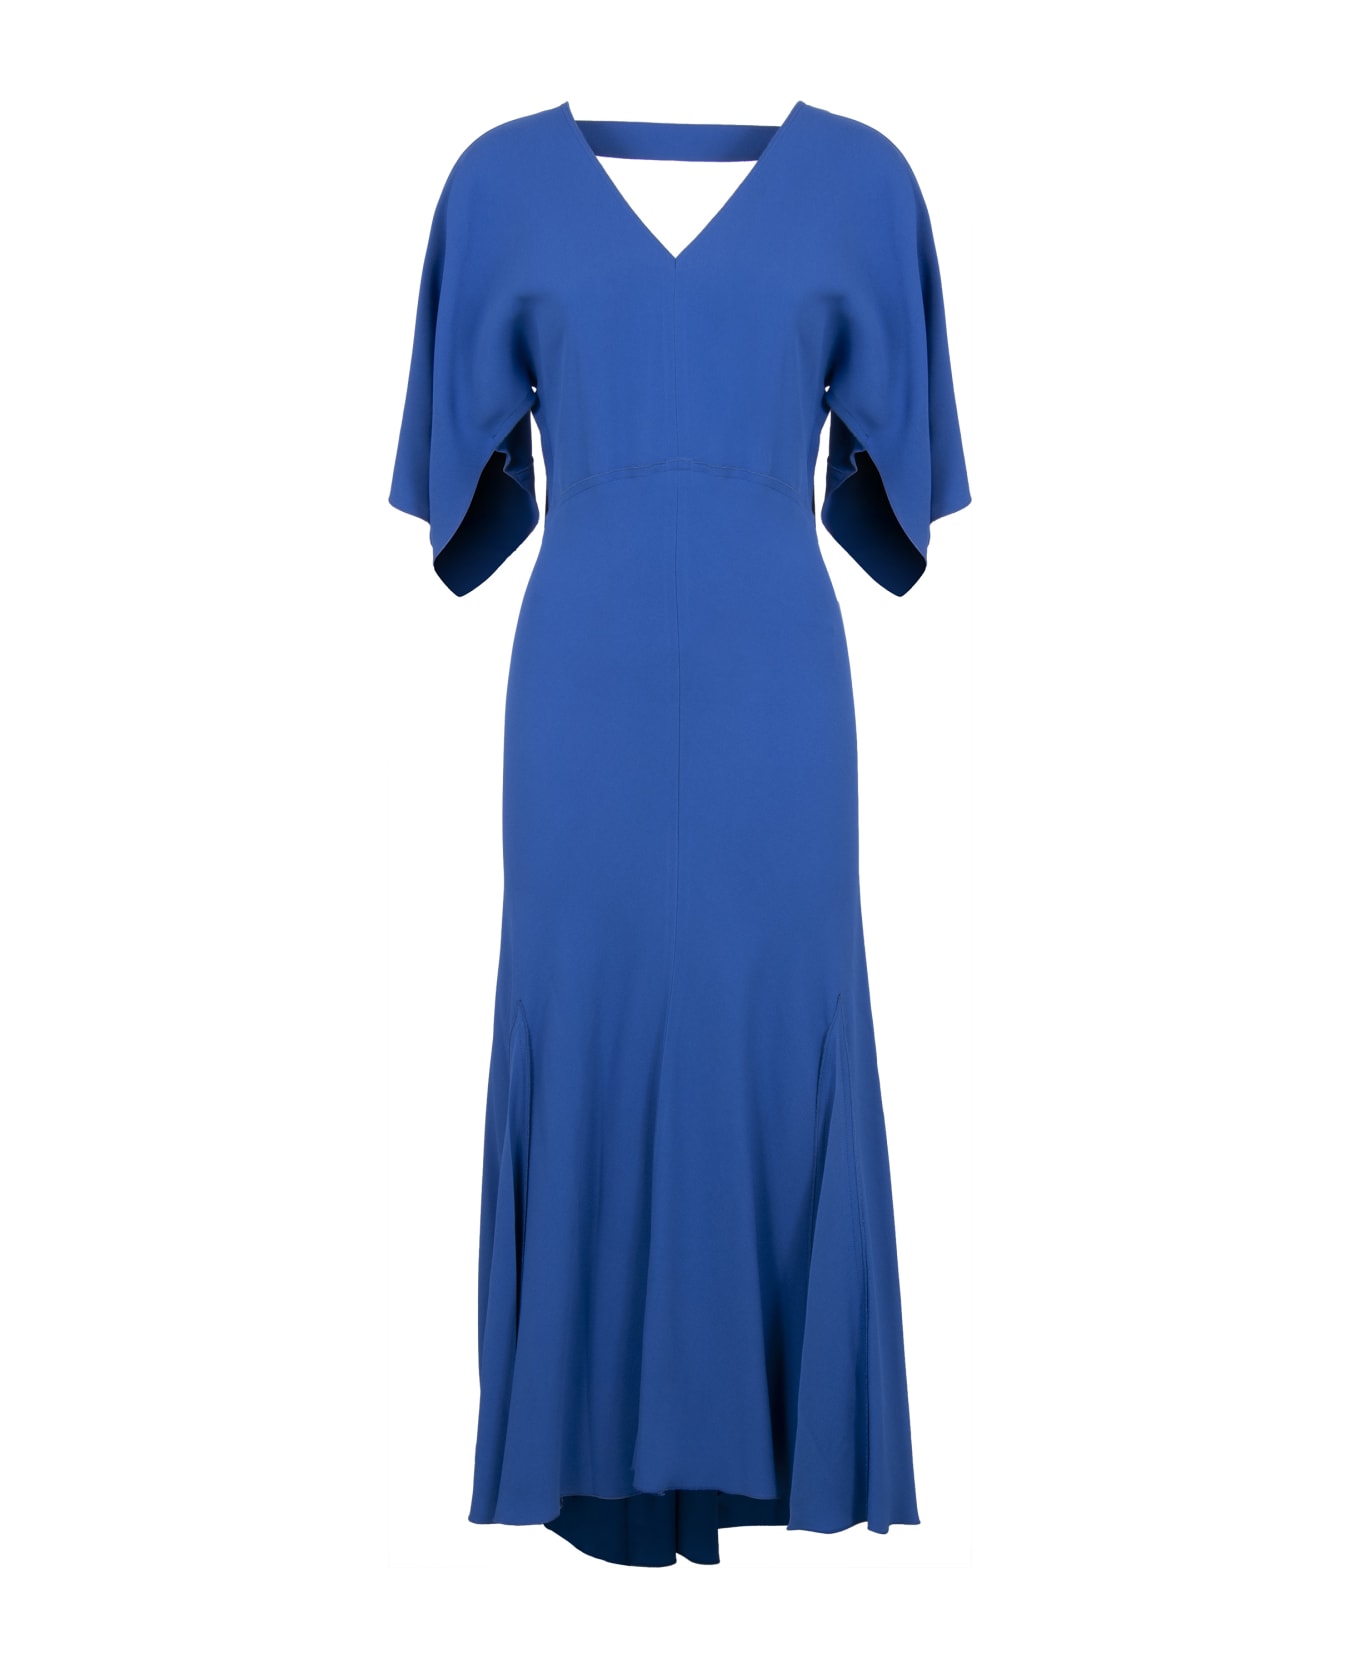 Victoria Beckham Cady Dress - blue